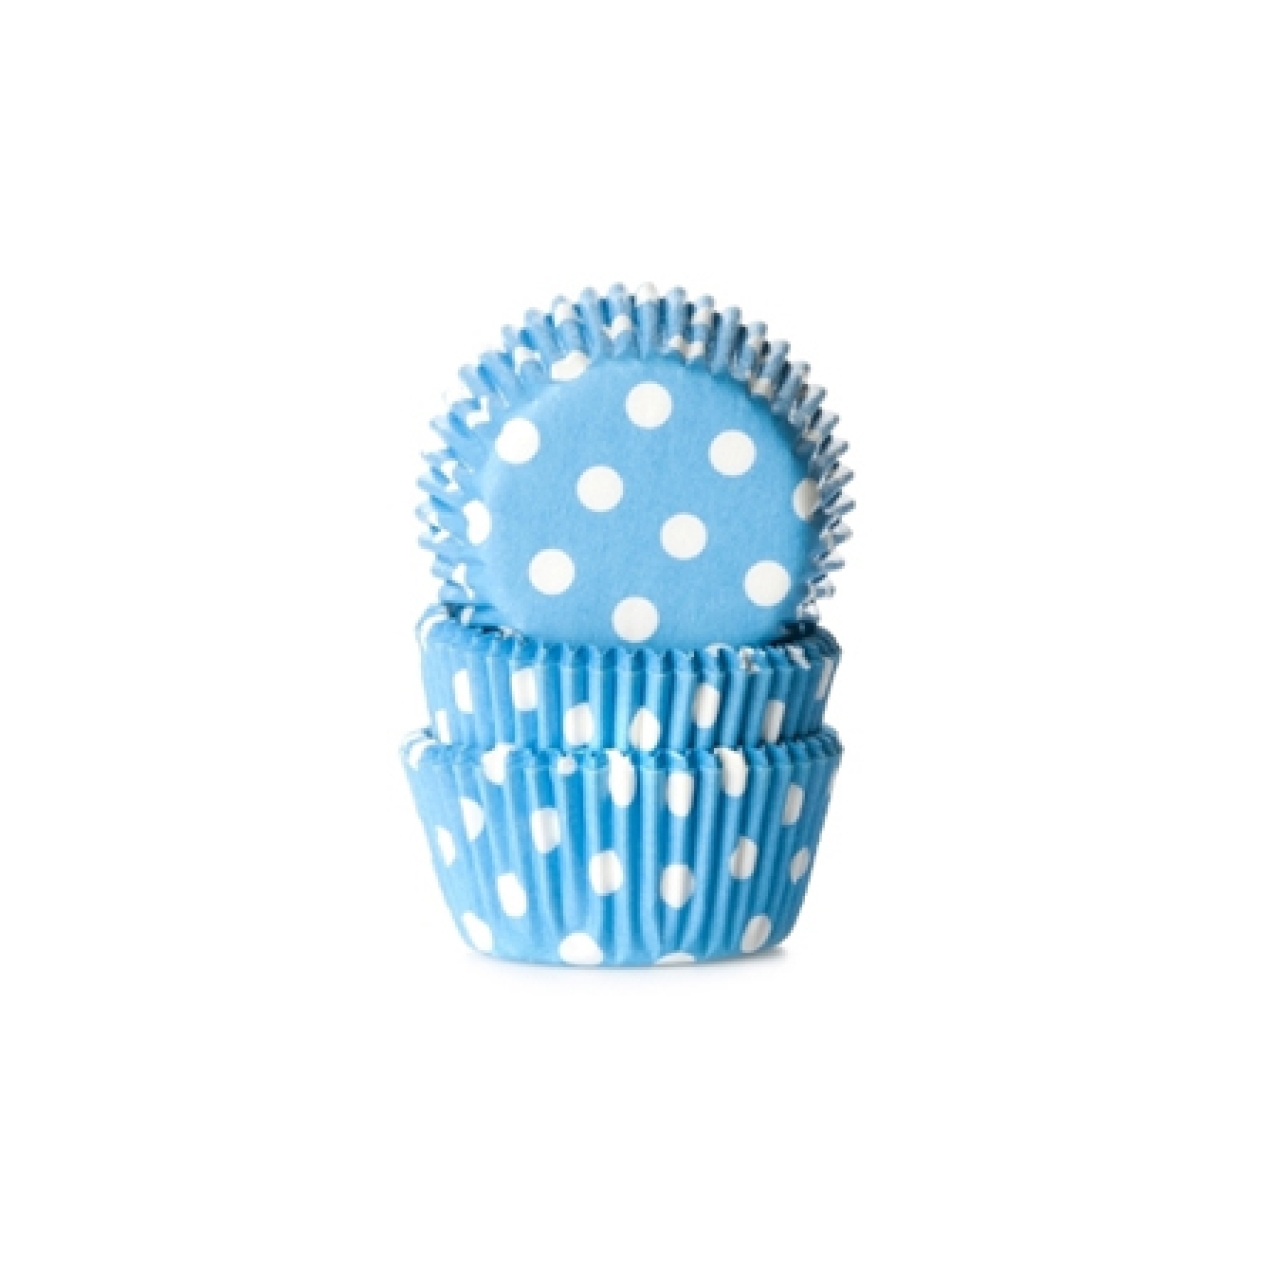 HoM Mini-Muffinförmchen, blau, weiße Punkte, 3,2 cm